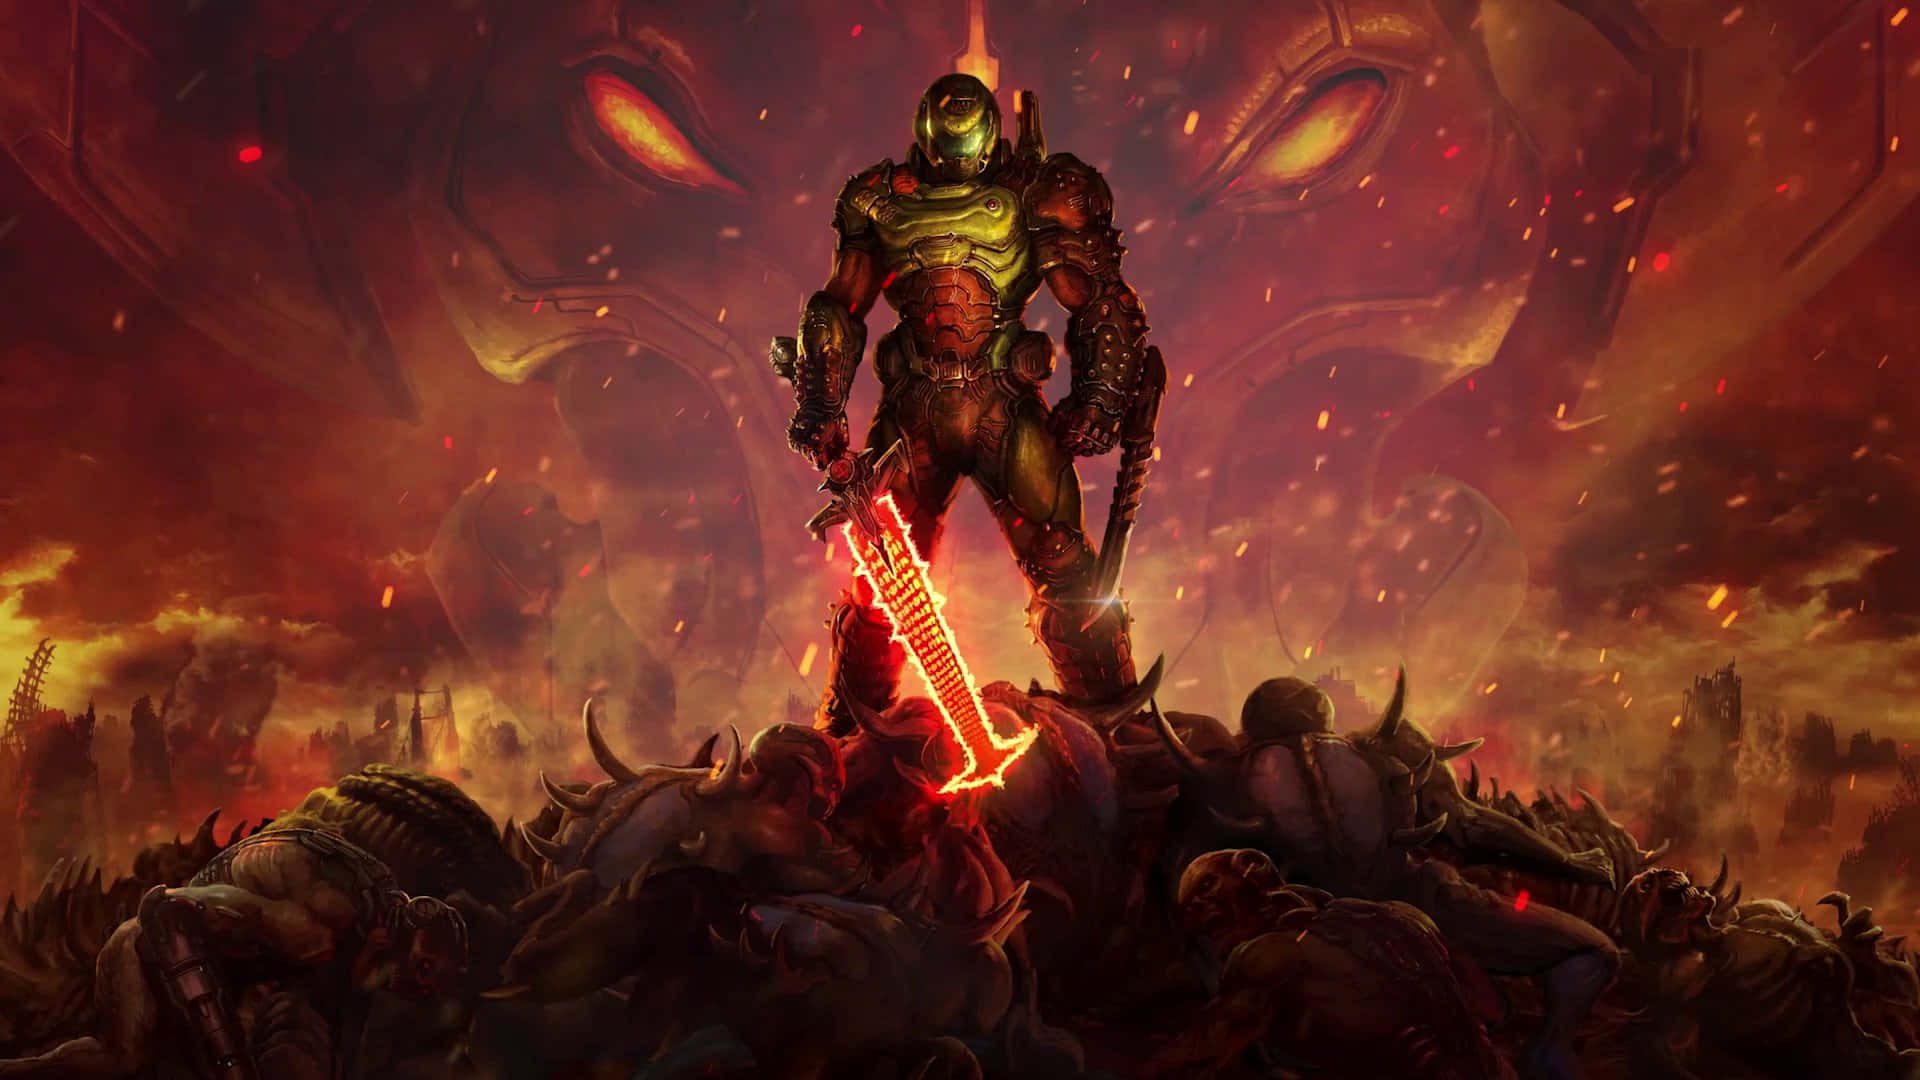 Overlev de infernalske kampe i det spændende FPS Doom Eternal. Wallpaper